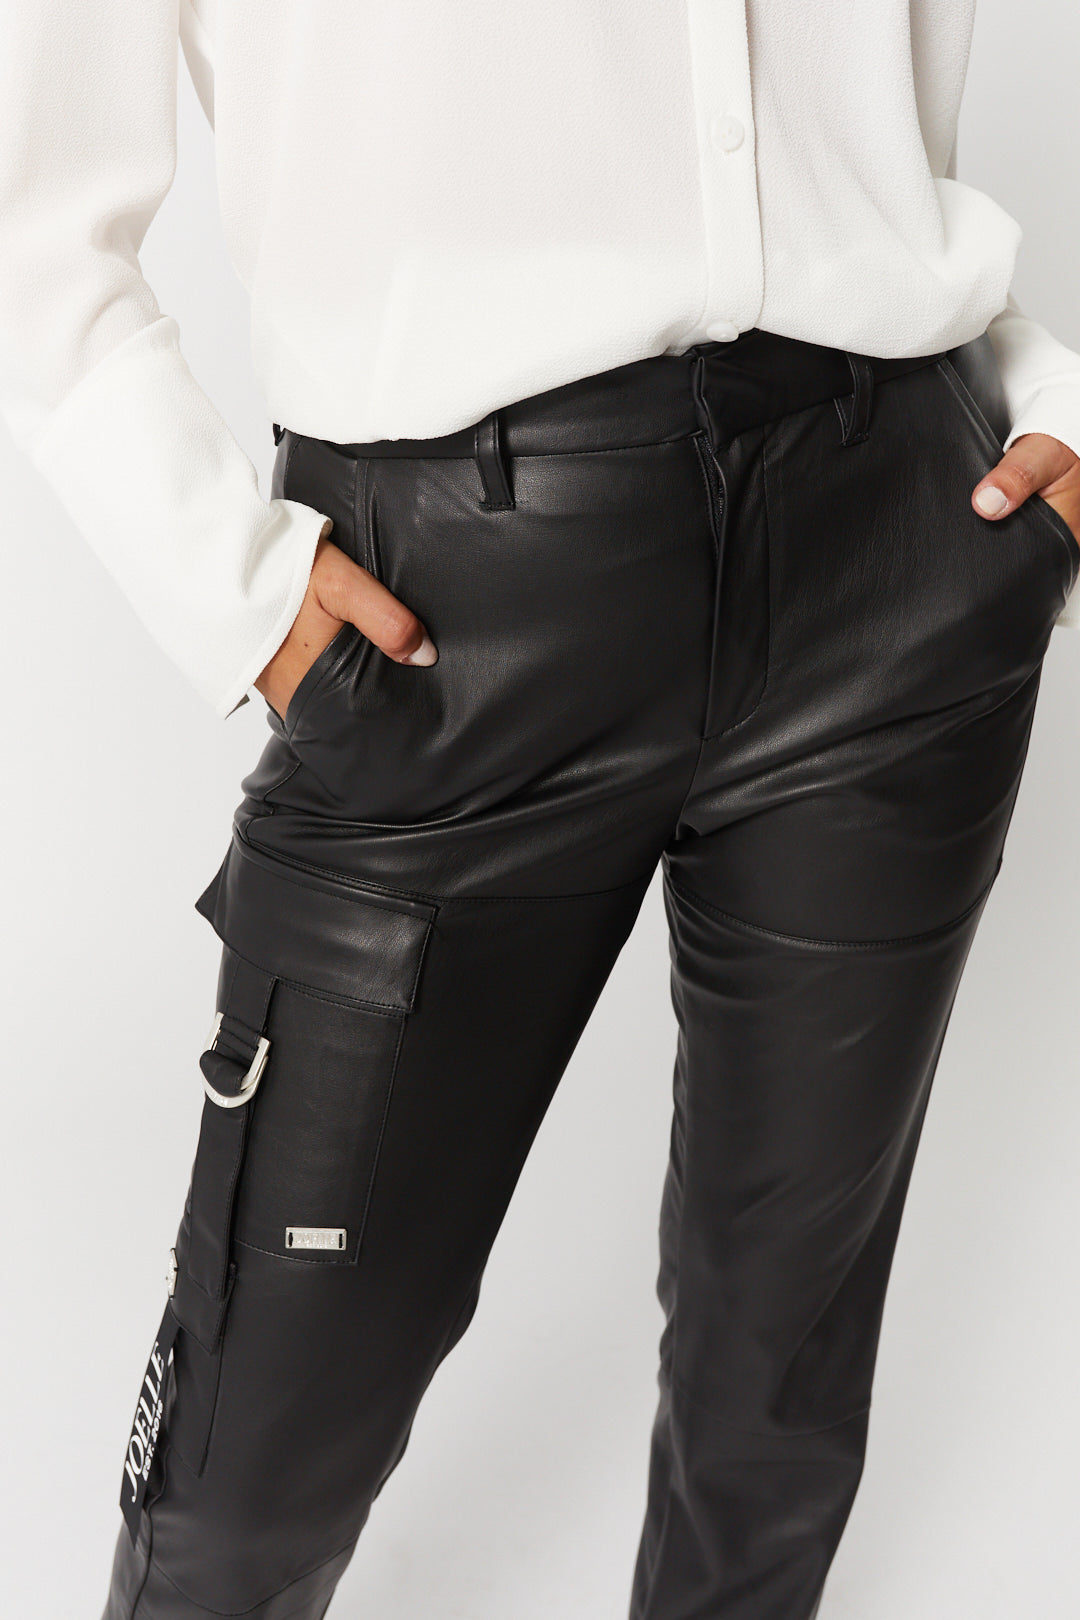 Pantalon noir effet cuir poches asymétriques | Daphne